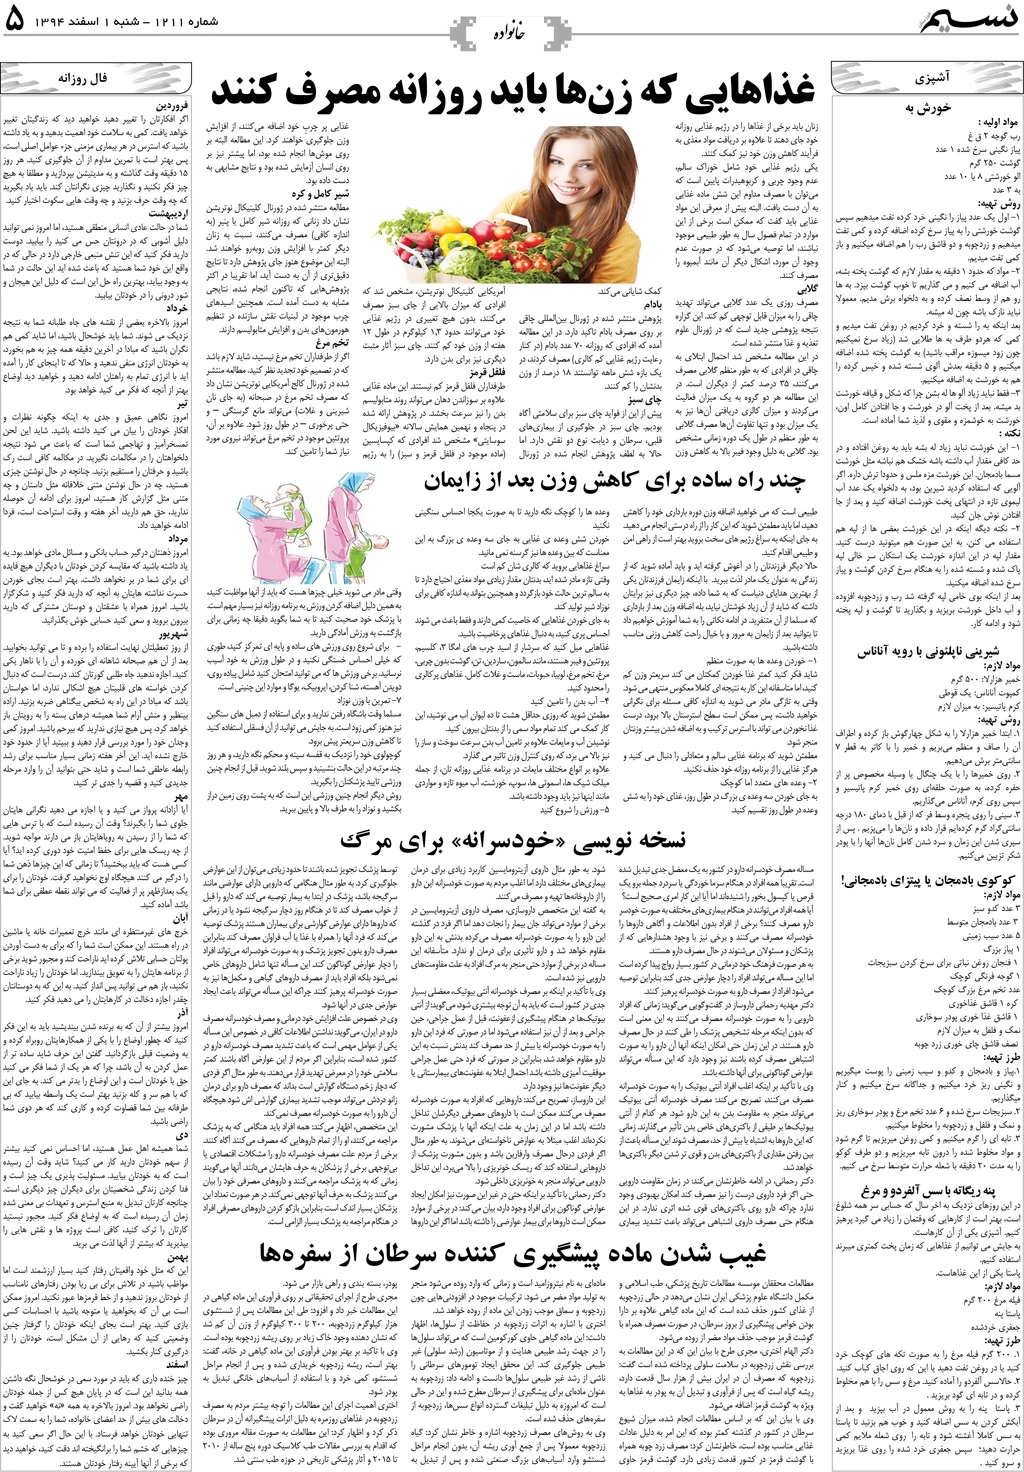 صفحه خانواده روزنامه نسیم شماره 1211